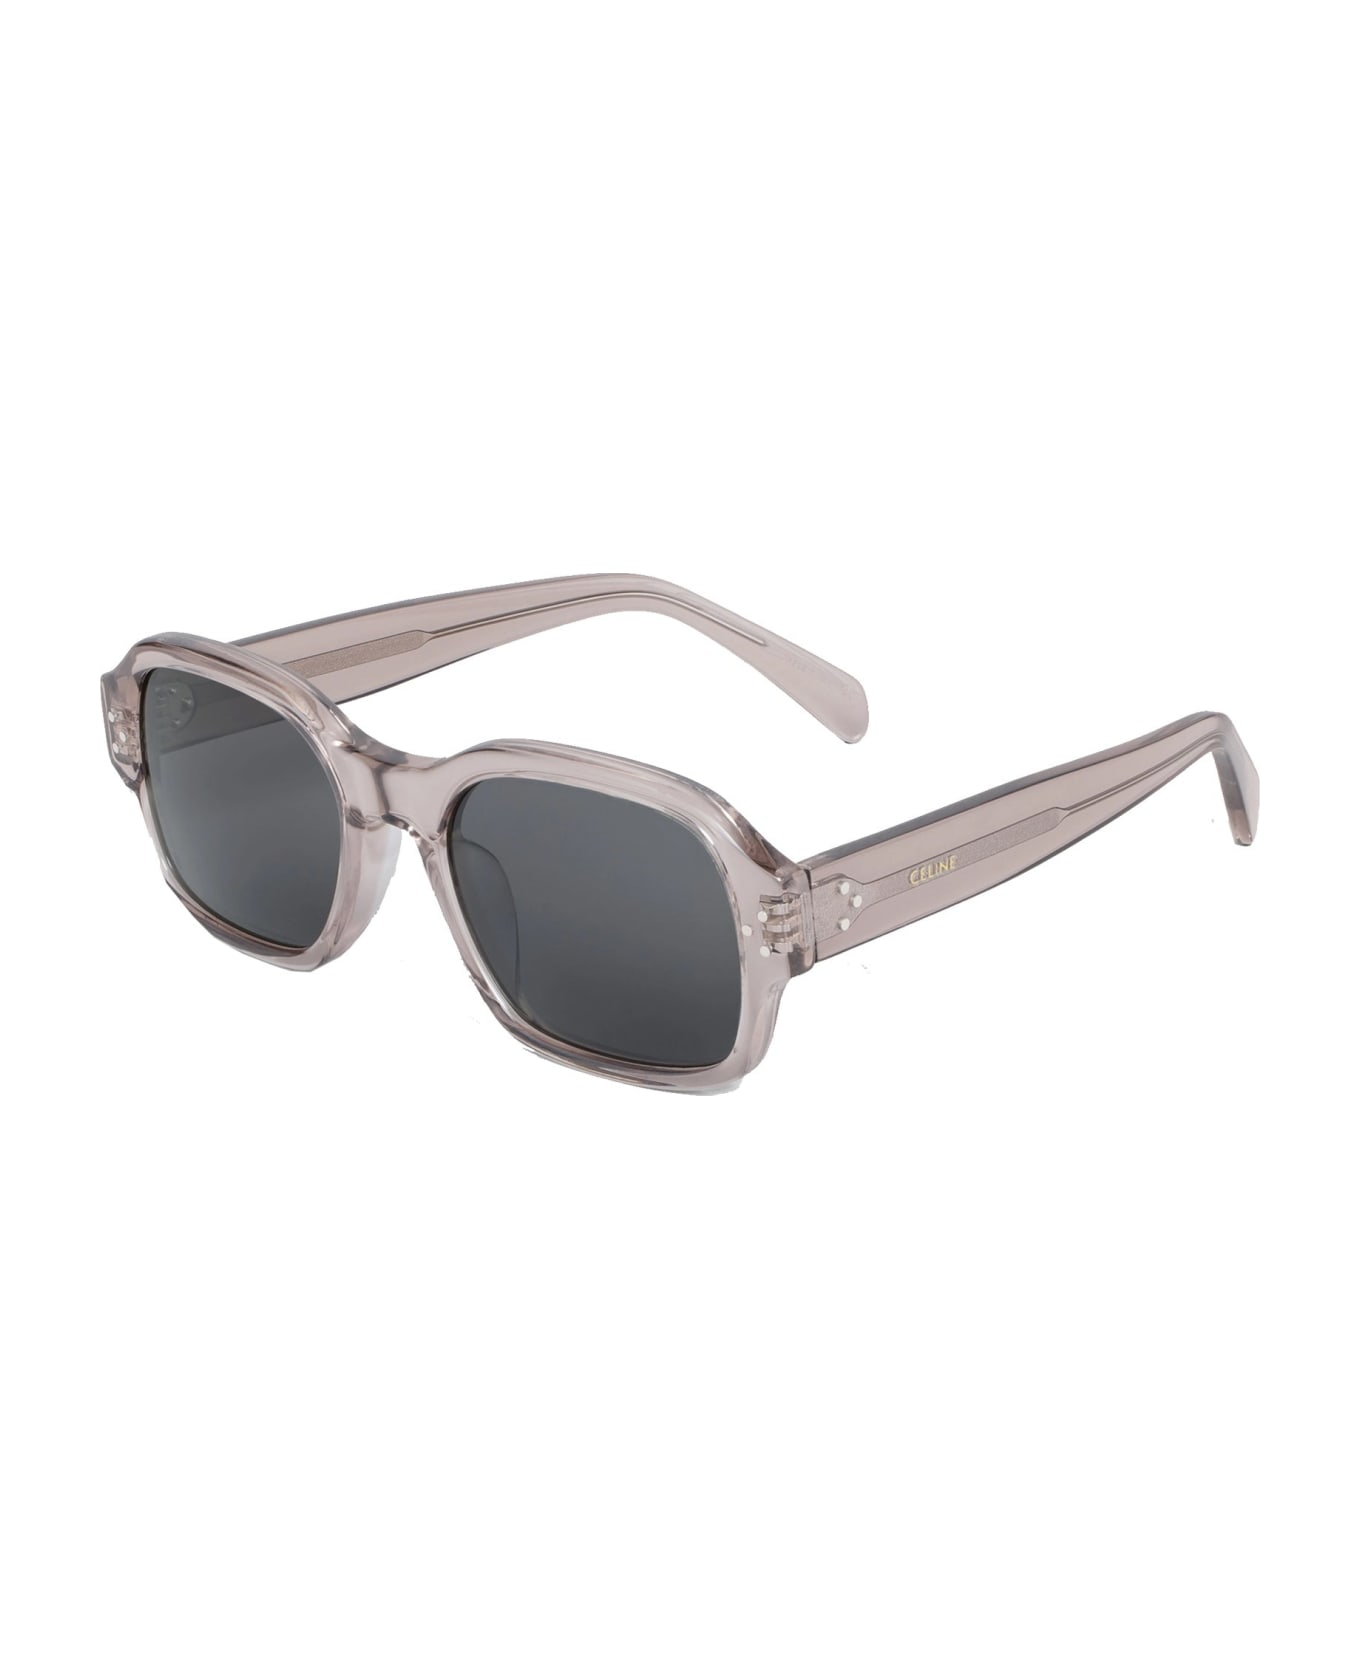 Celine Frame 49 Sunglasses - Gray